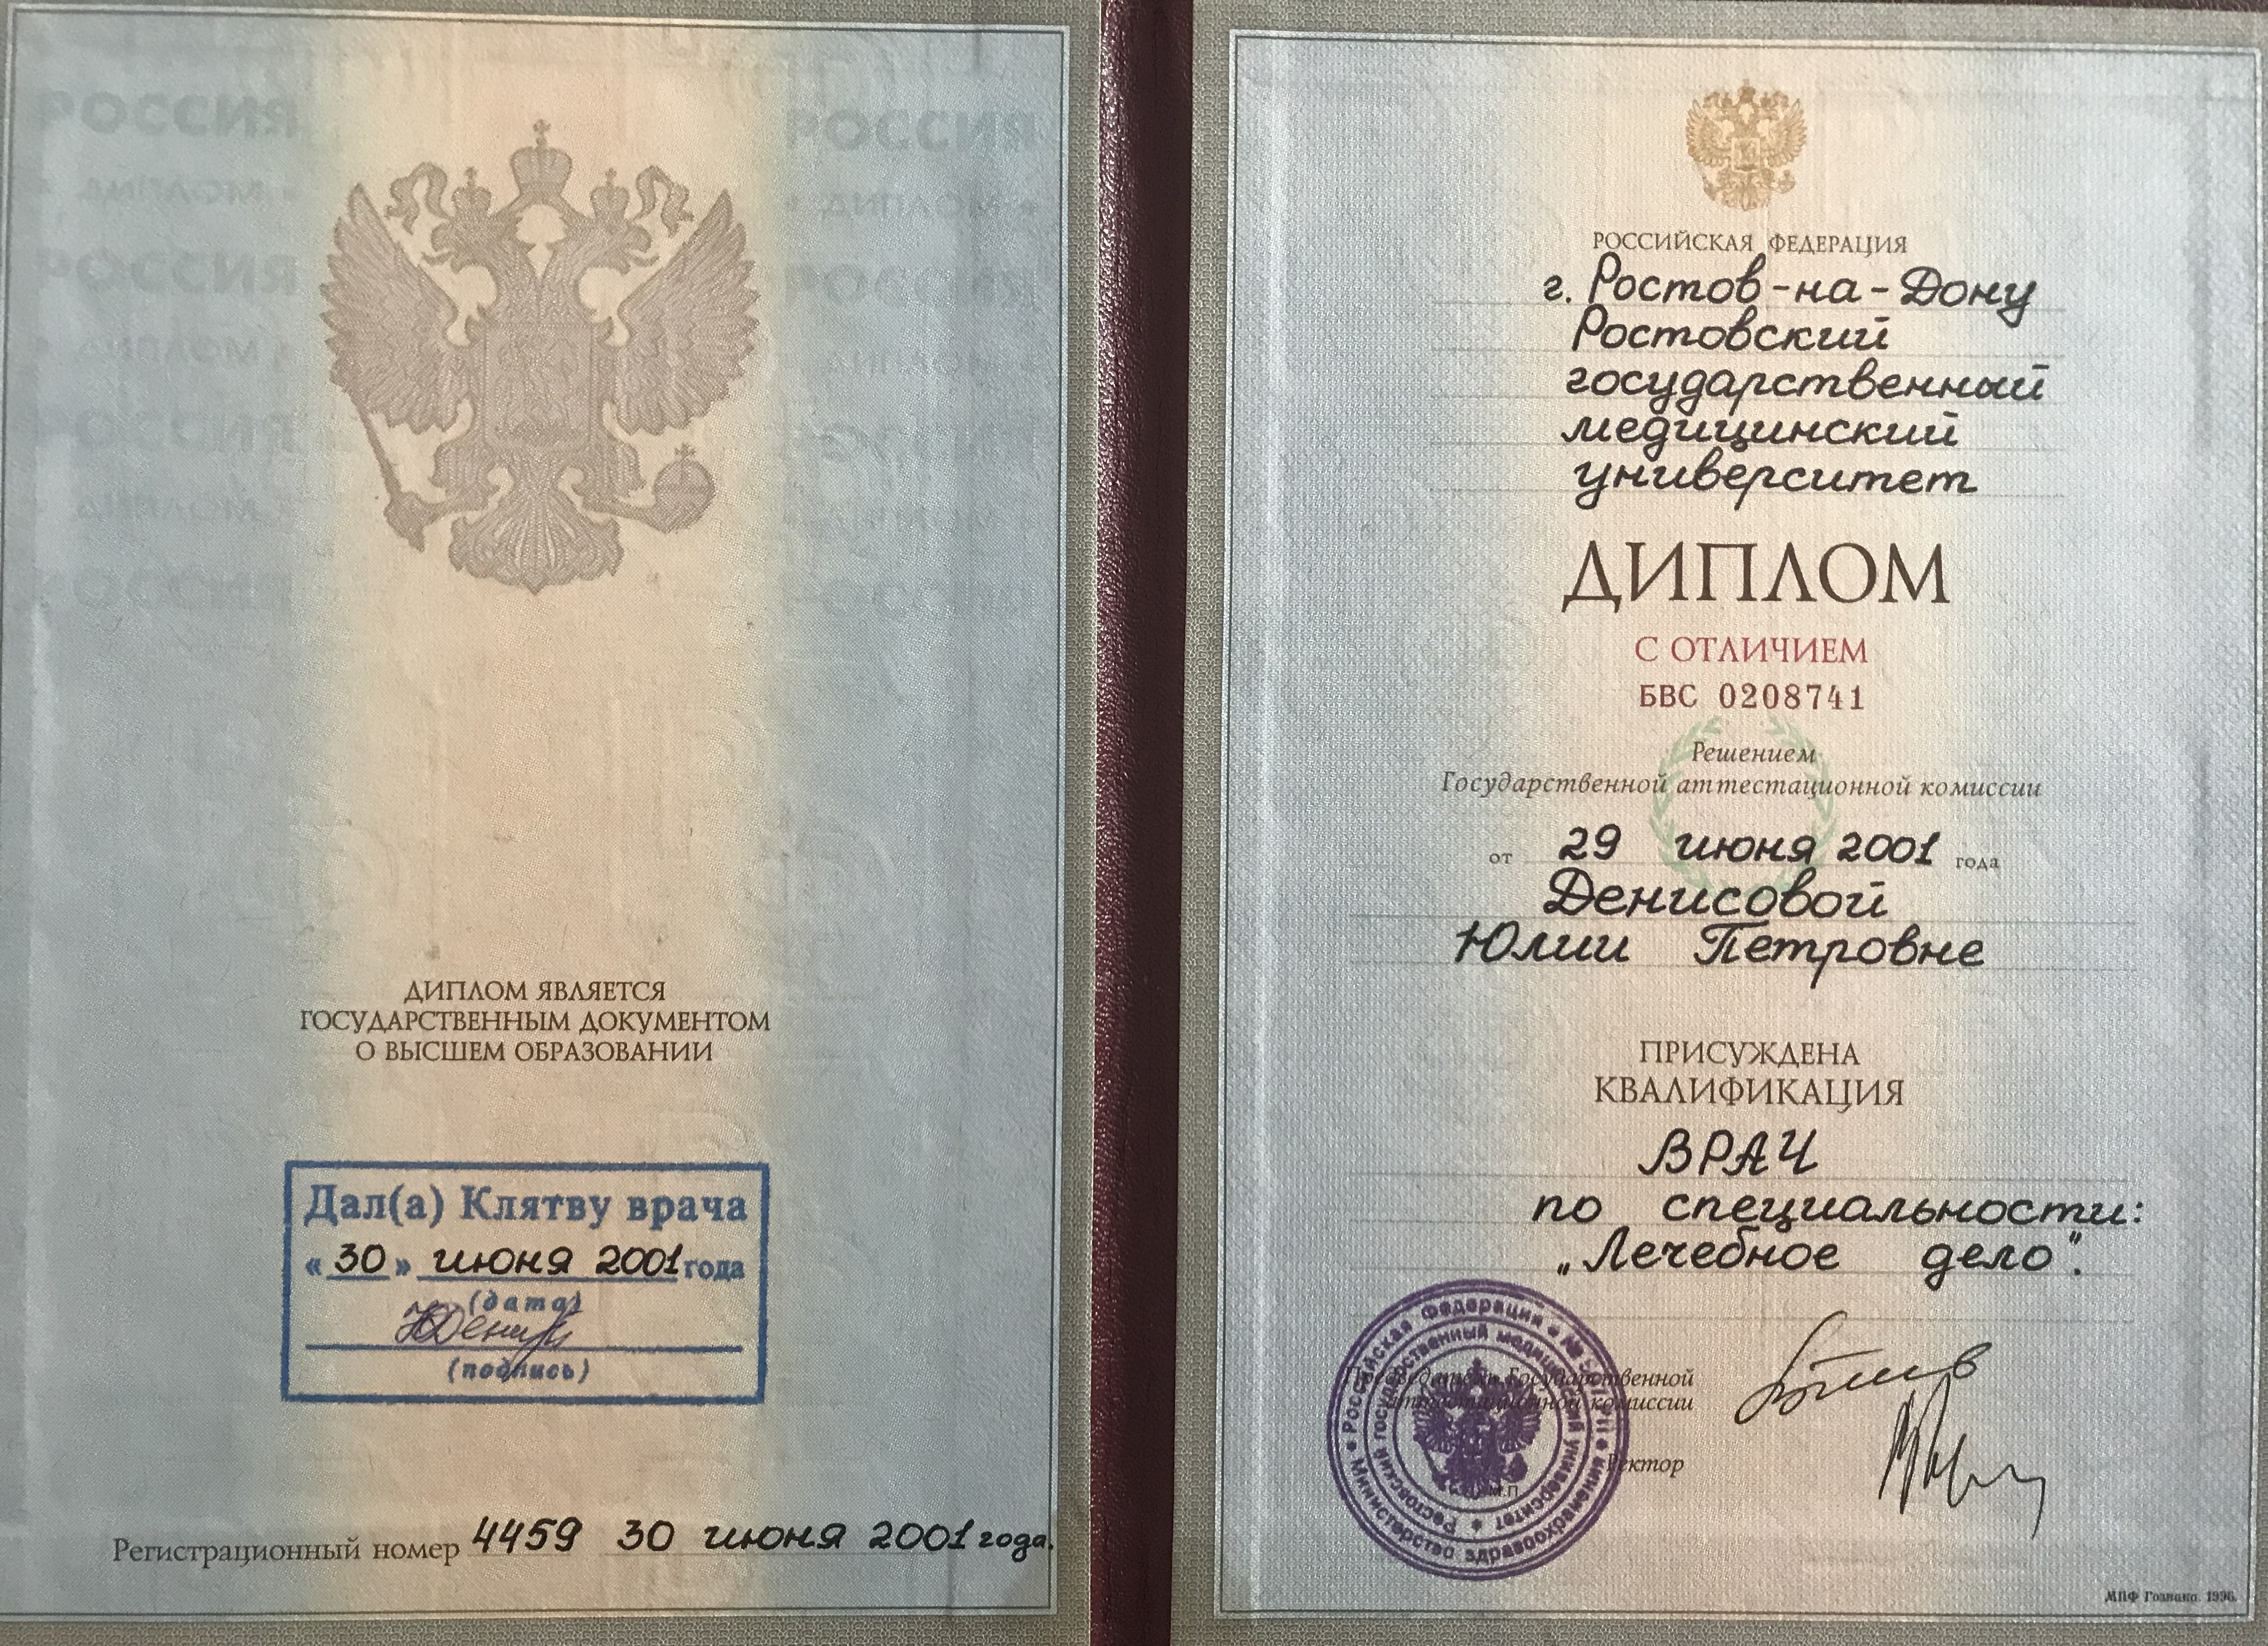 Сертификат Денисовой Юлии